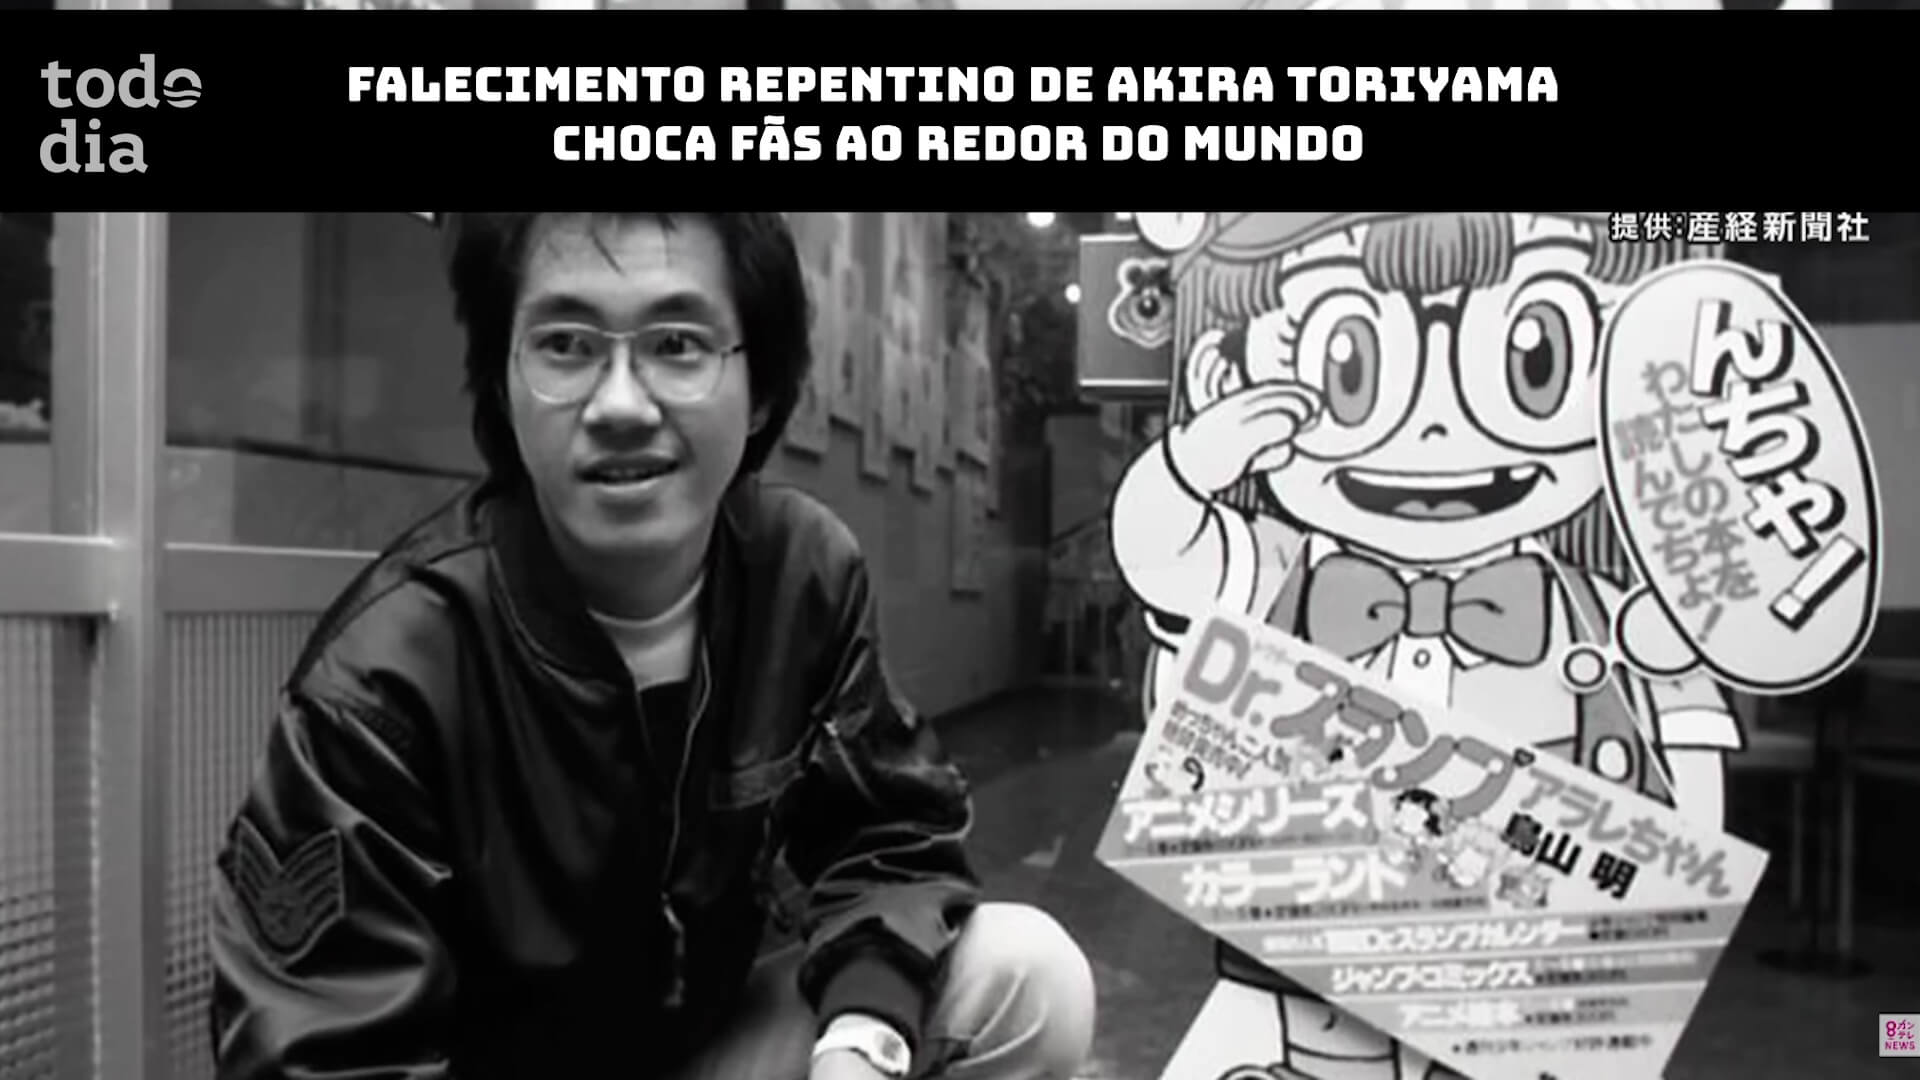 Falecimento repentino de Akira Toriyama choca fãs ao redor do mundo